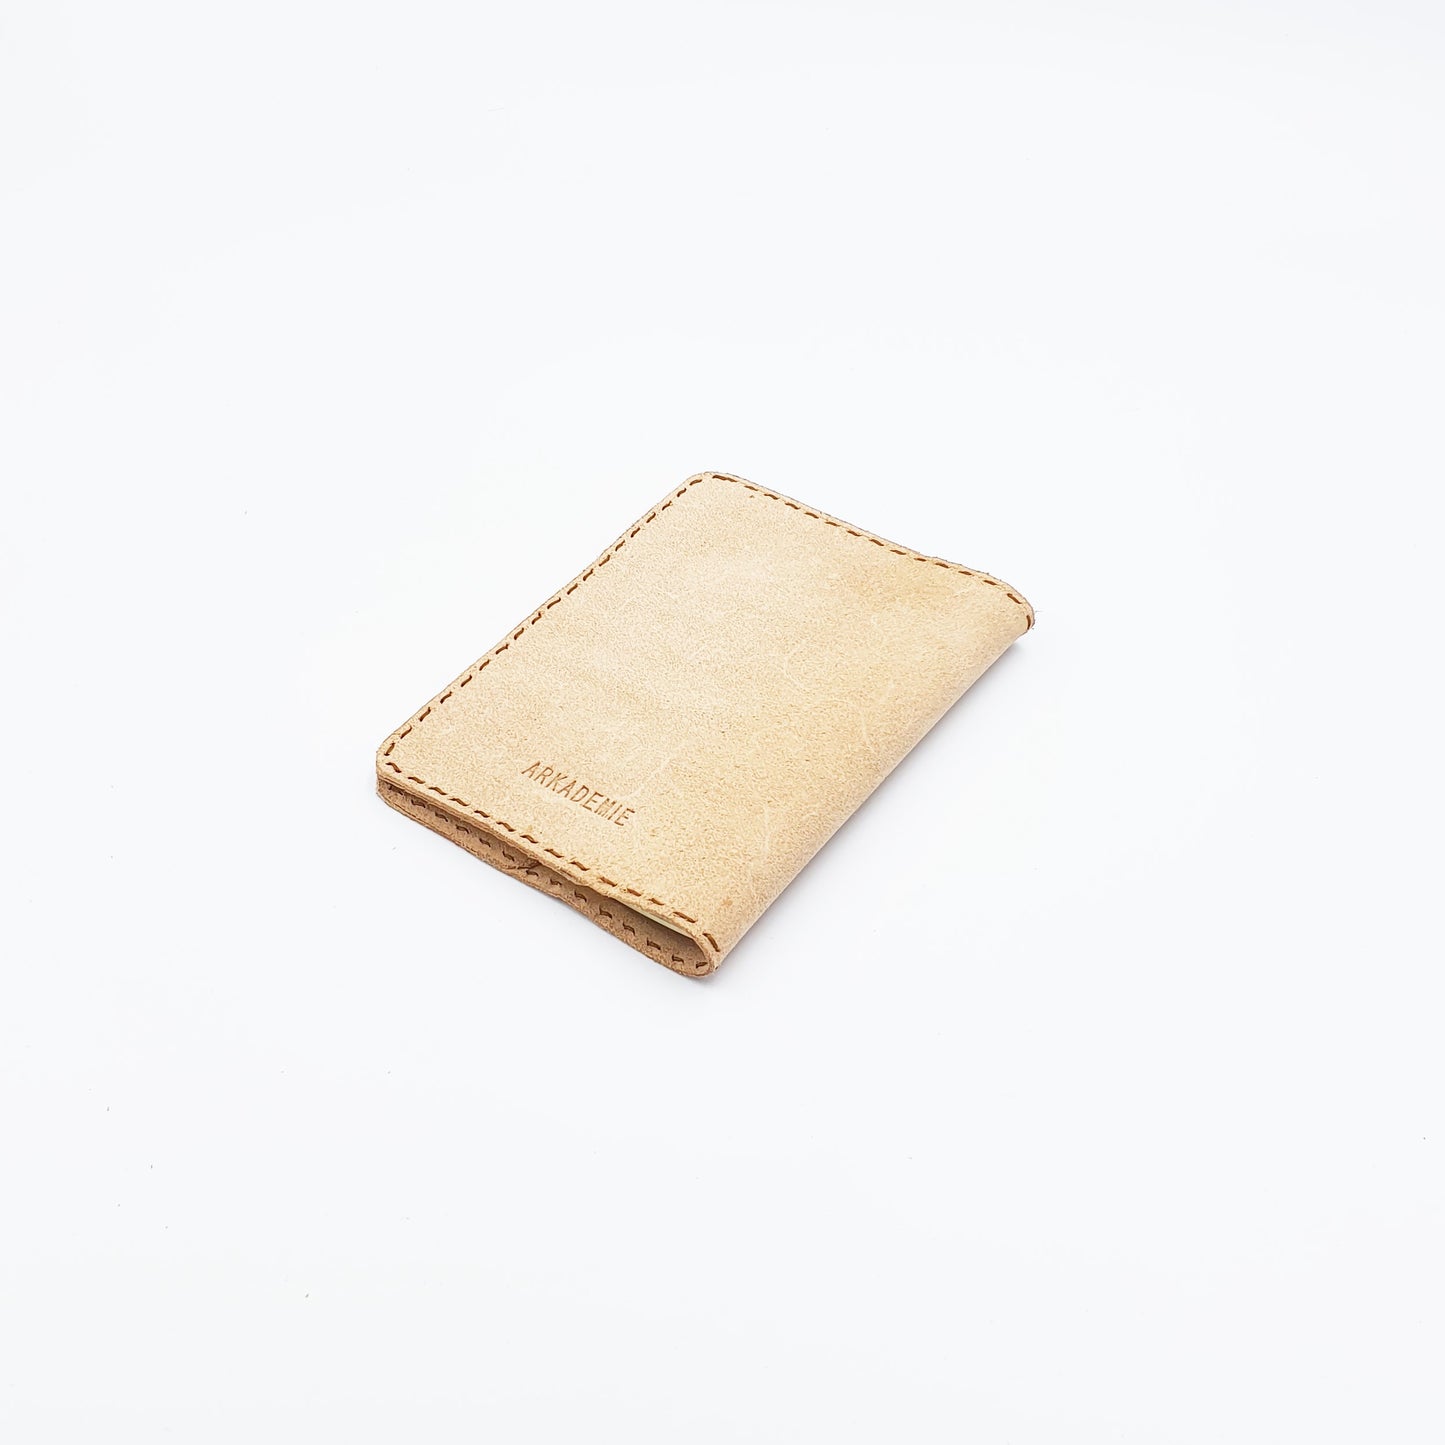 ECOLEA Passport Traveller's Notebook Sleeve